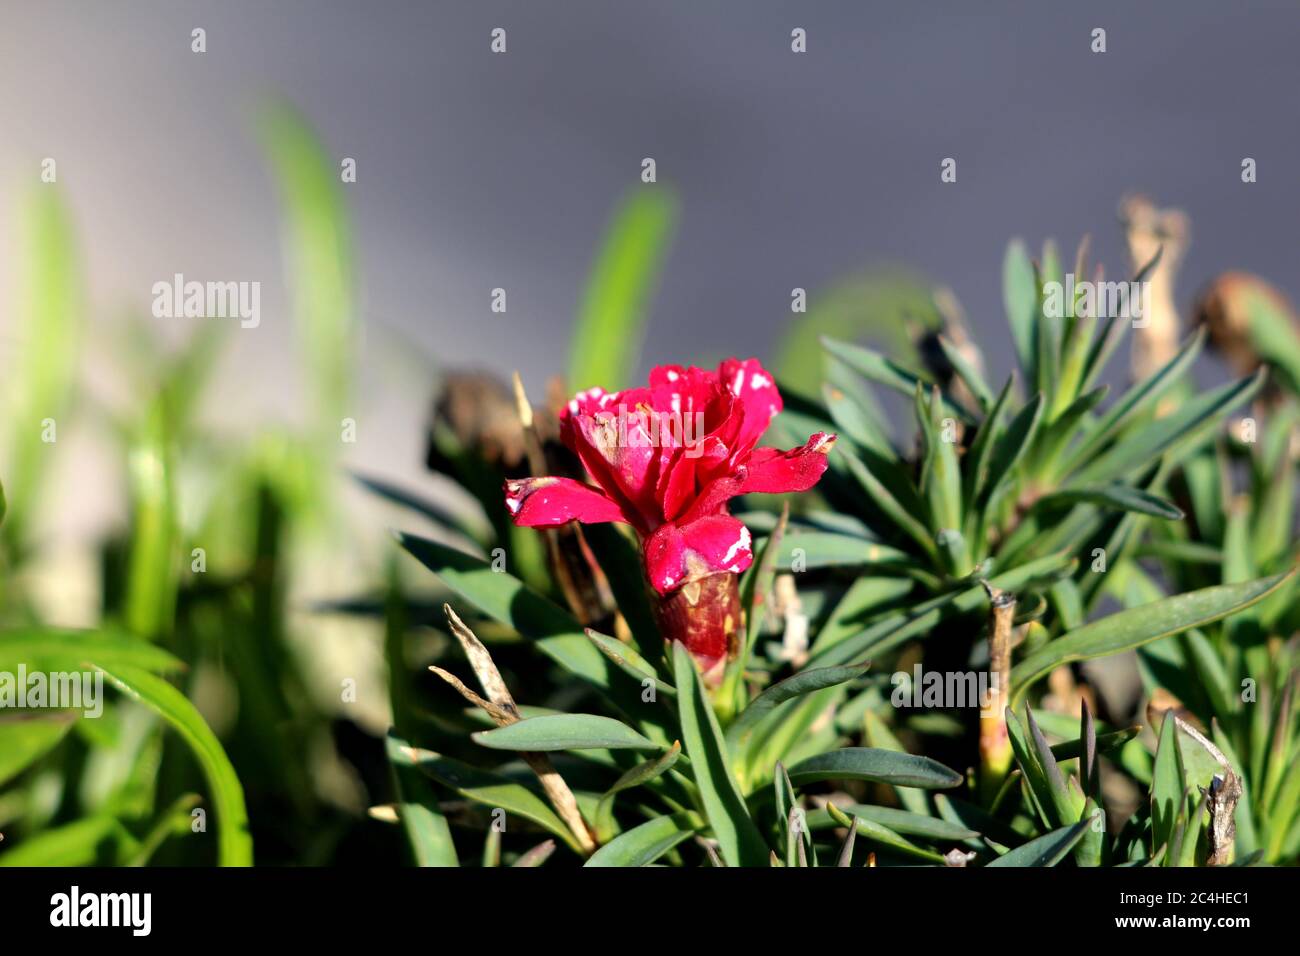 Single Nelke oder Dianthus caryophyllus oder Nelke rosa kleine krautige  mehrjährige rote Blume mit teilweise verwelkten Blütenblättern  Stockfotografie - Alamy